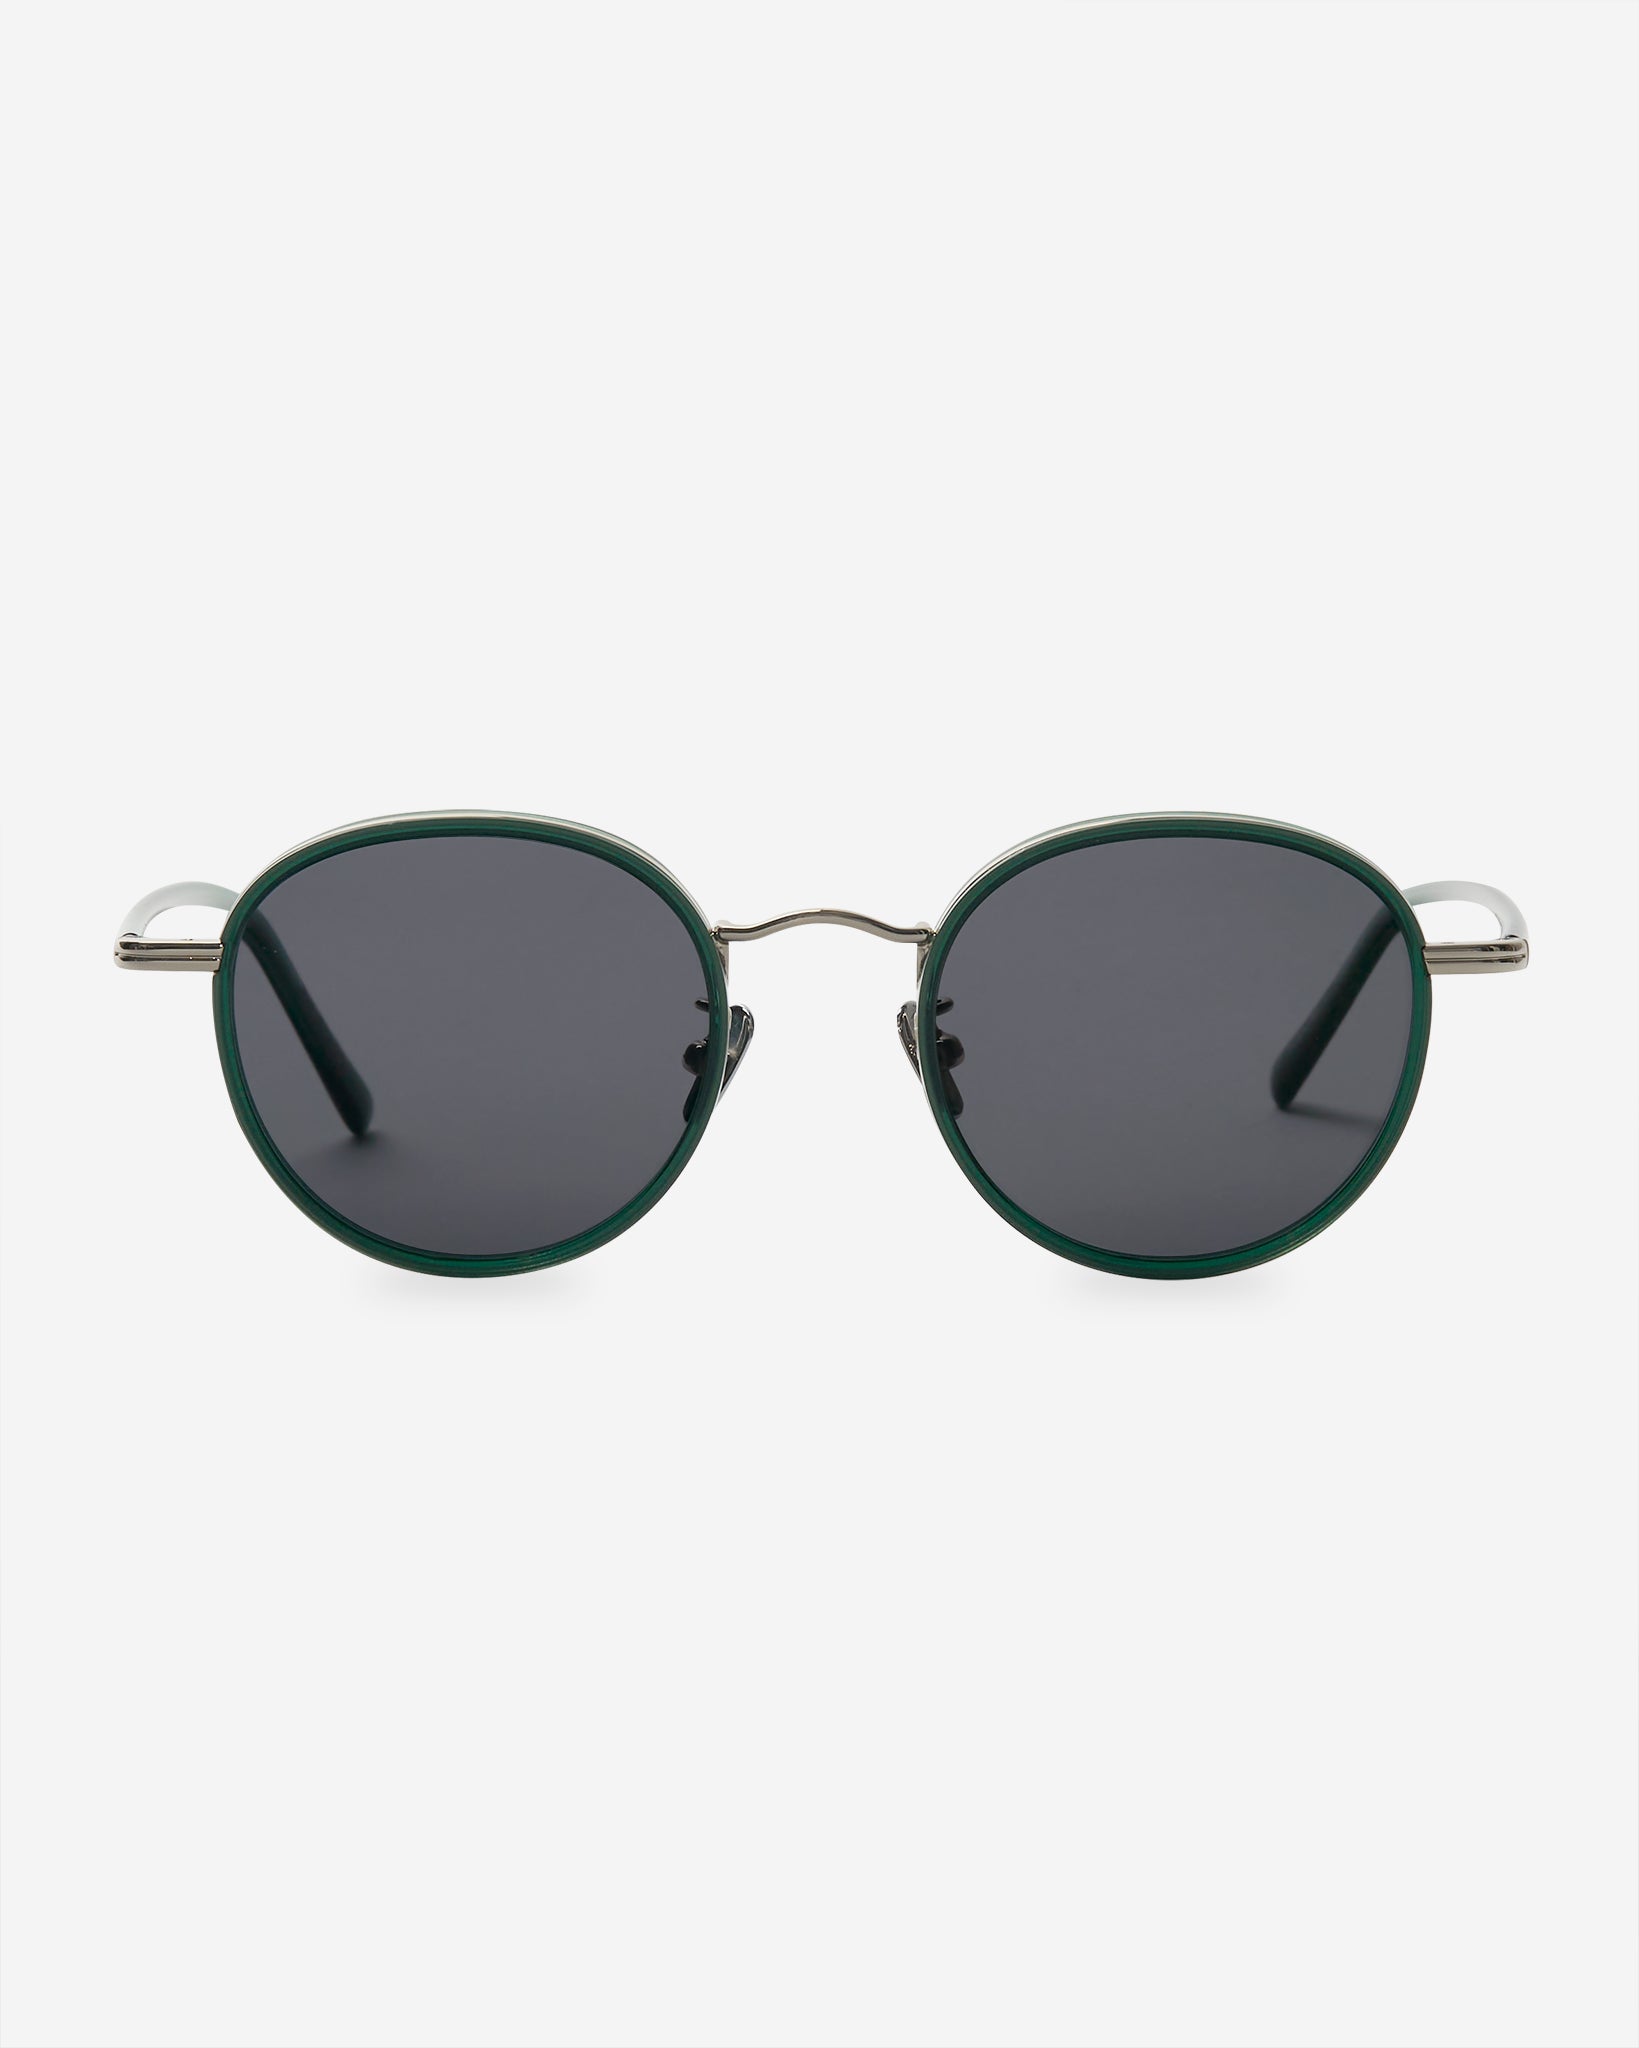 Plea Sunglasses - Green/Silver